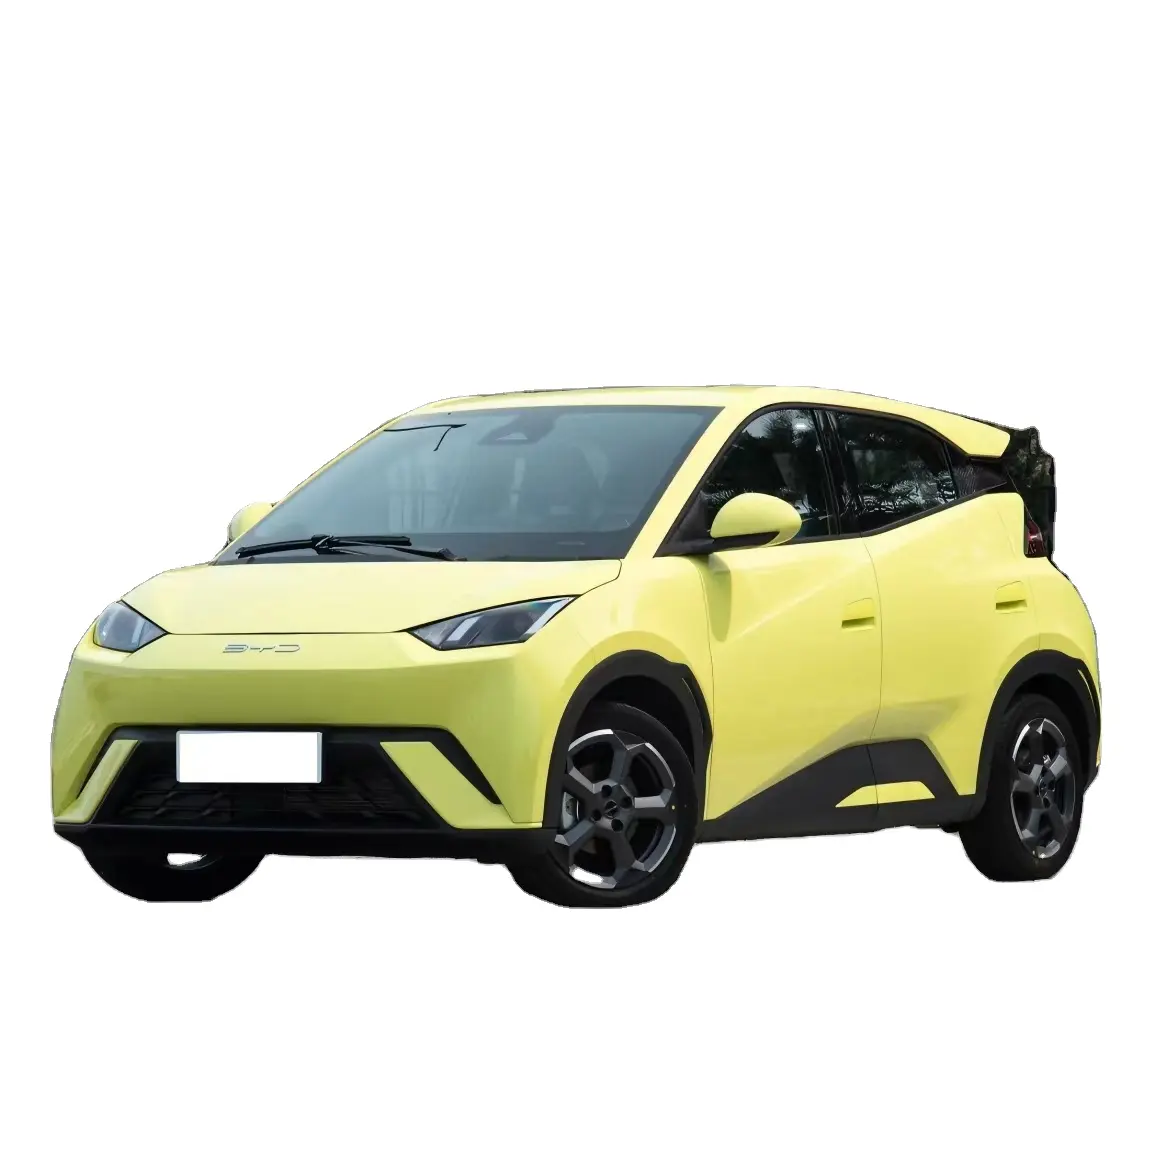 2023 סיני BYD חשמלי קטן מכוניות Byd שחף חשמלי רכב חדש אנרגיה כלי רכב Byd חכם EV רכב שחף הטוב ביותר מחיר